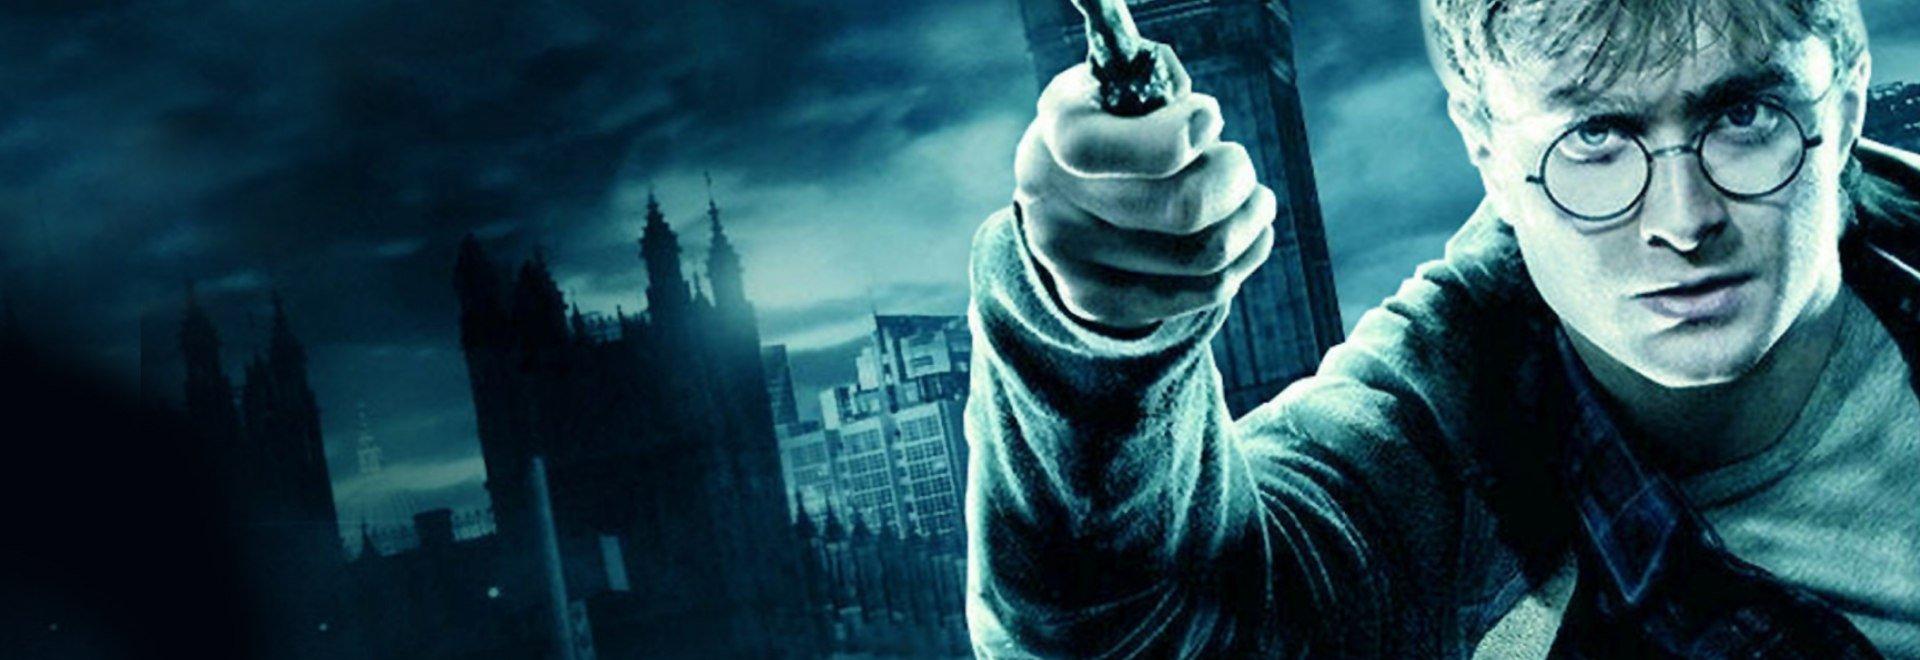 Harry Potter e i doni della morte: Parte I